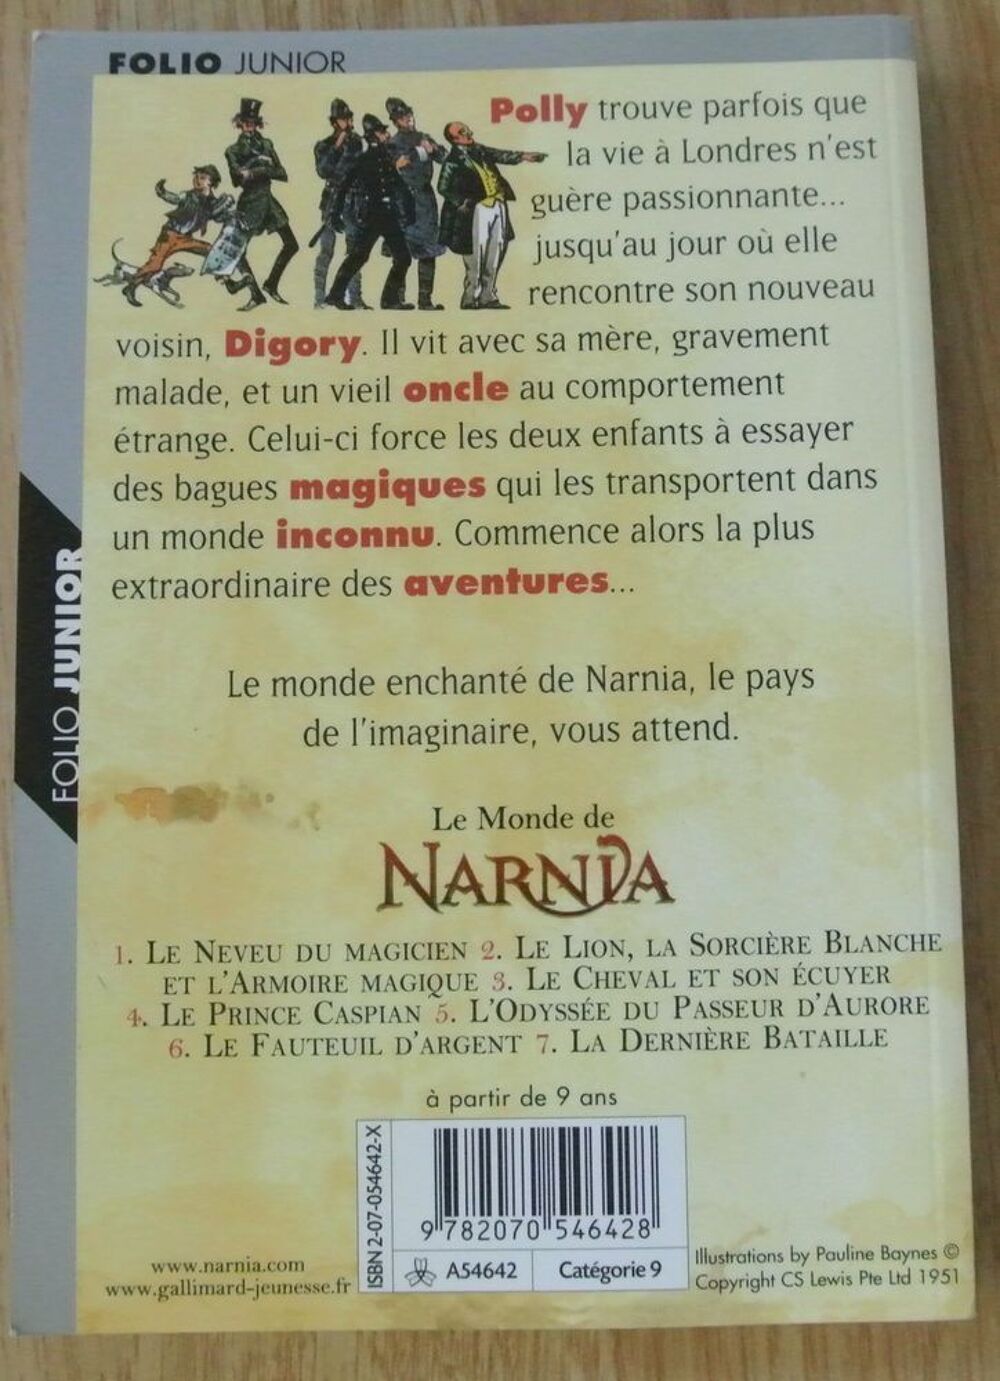 Le Monde de Narnia de C.S LEWIS
Livres et BD